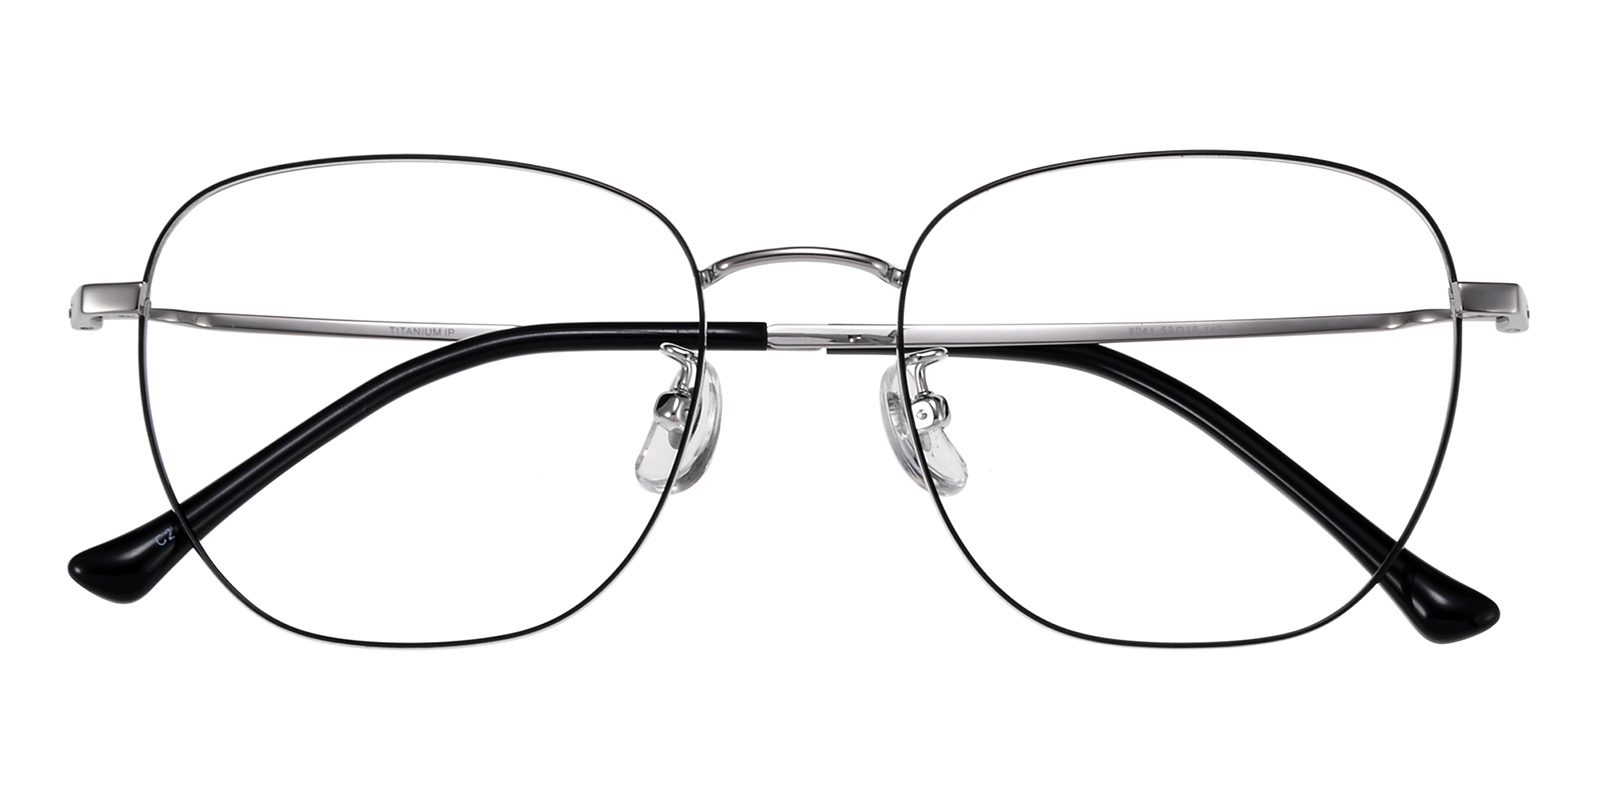 Unisex Aviator Eyeglasses Full Frame Titanium Black/Silver - FT0294